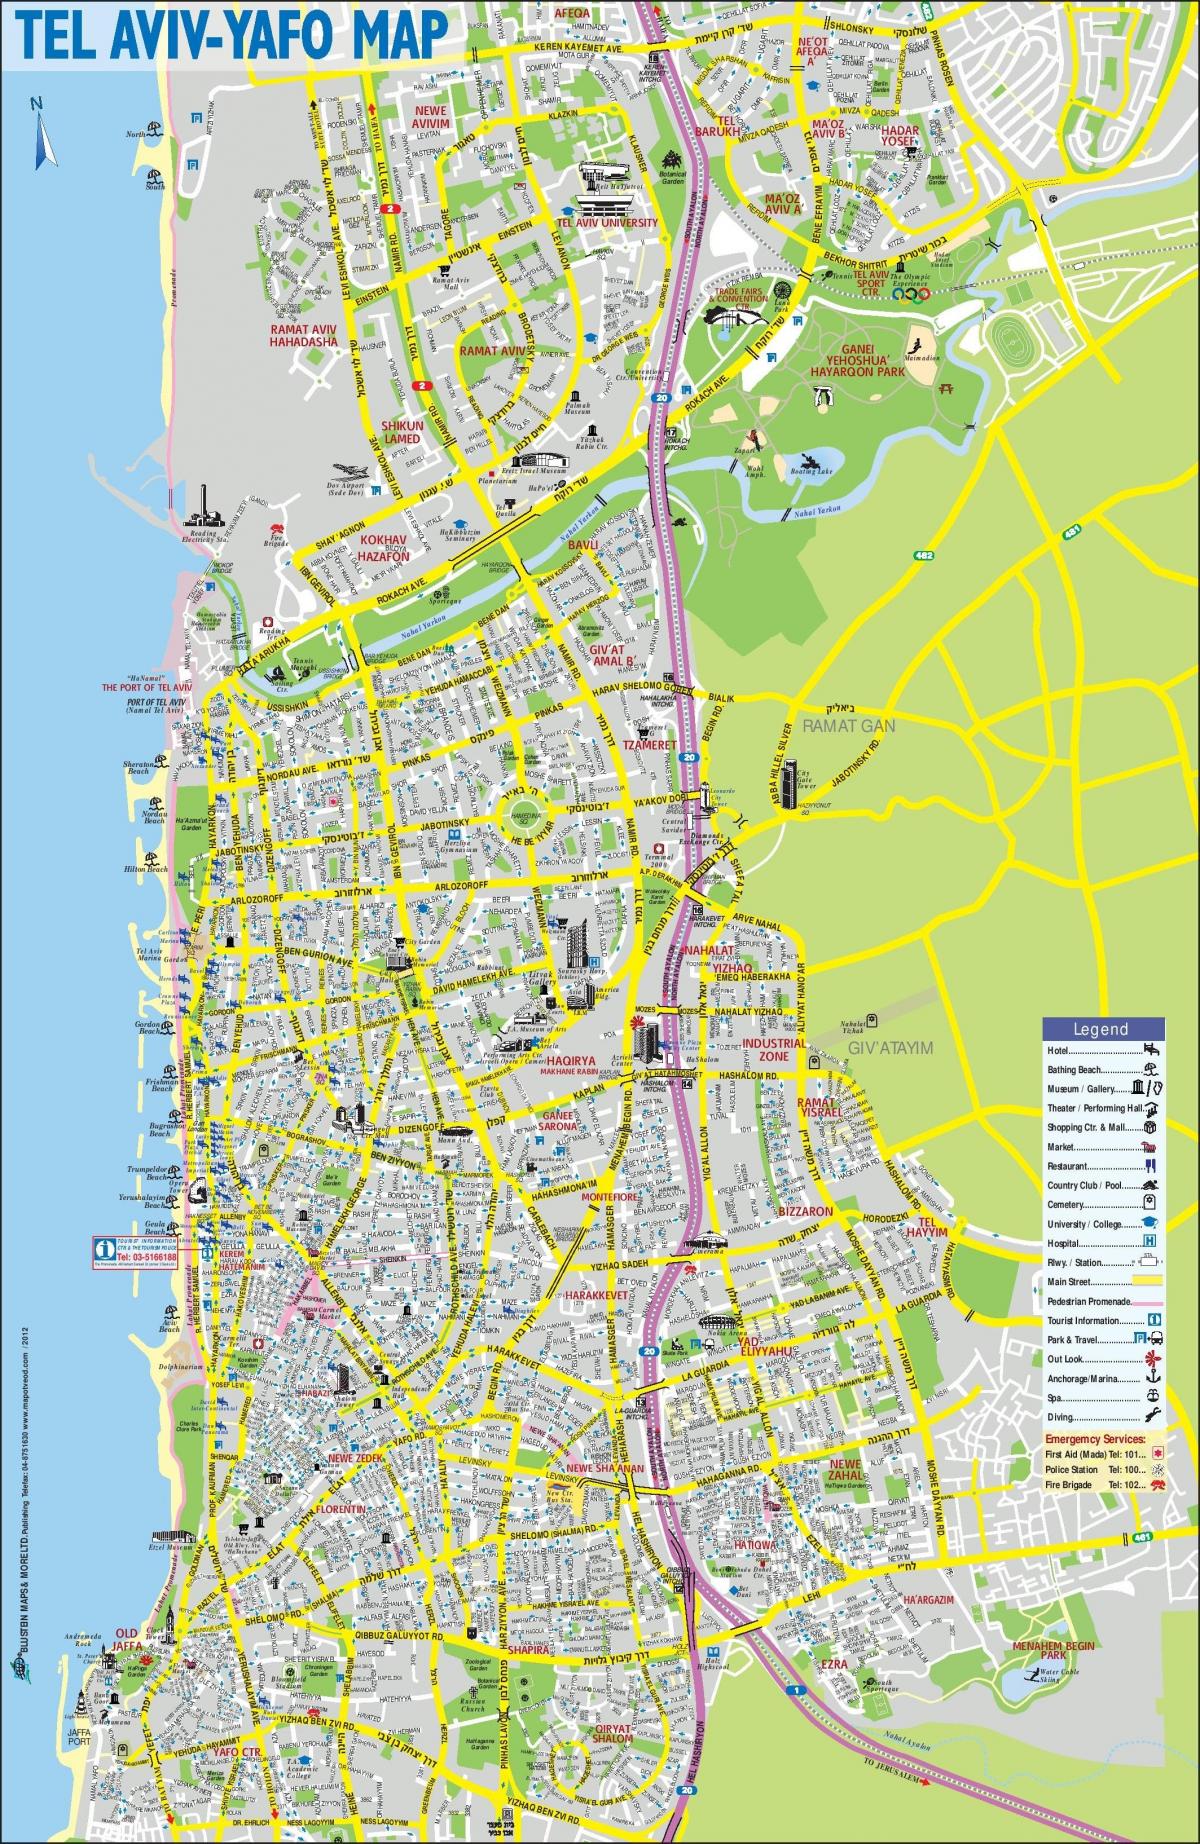 Mappa dei tour a piedi di Tel Aviv